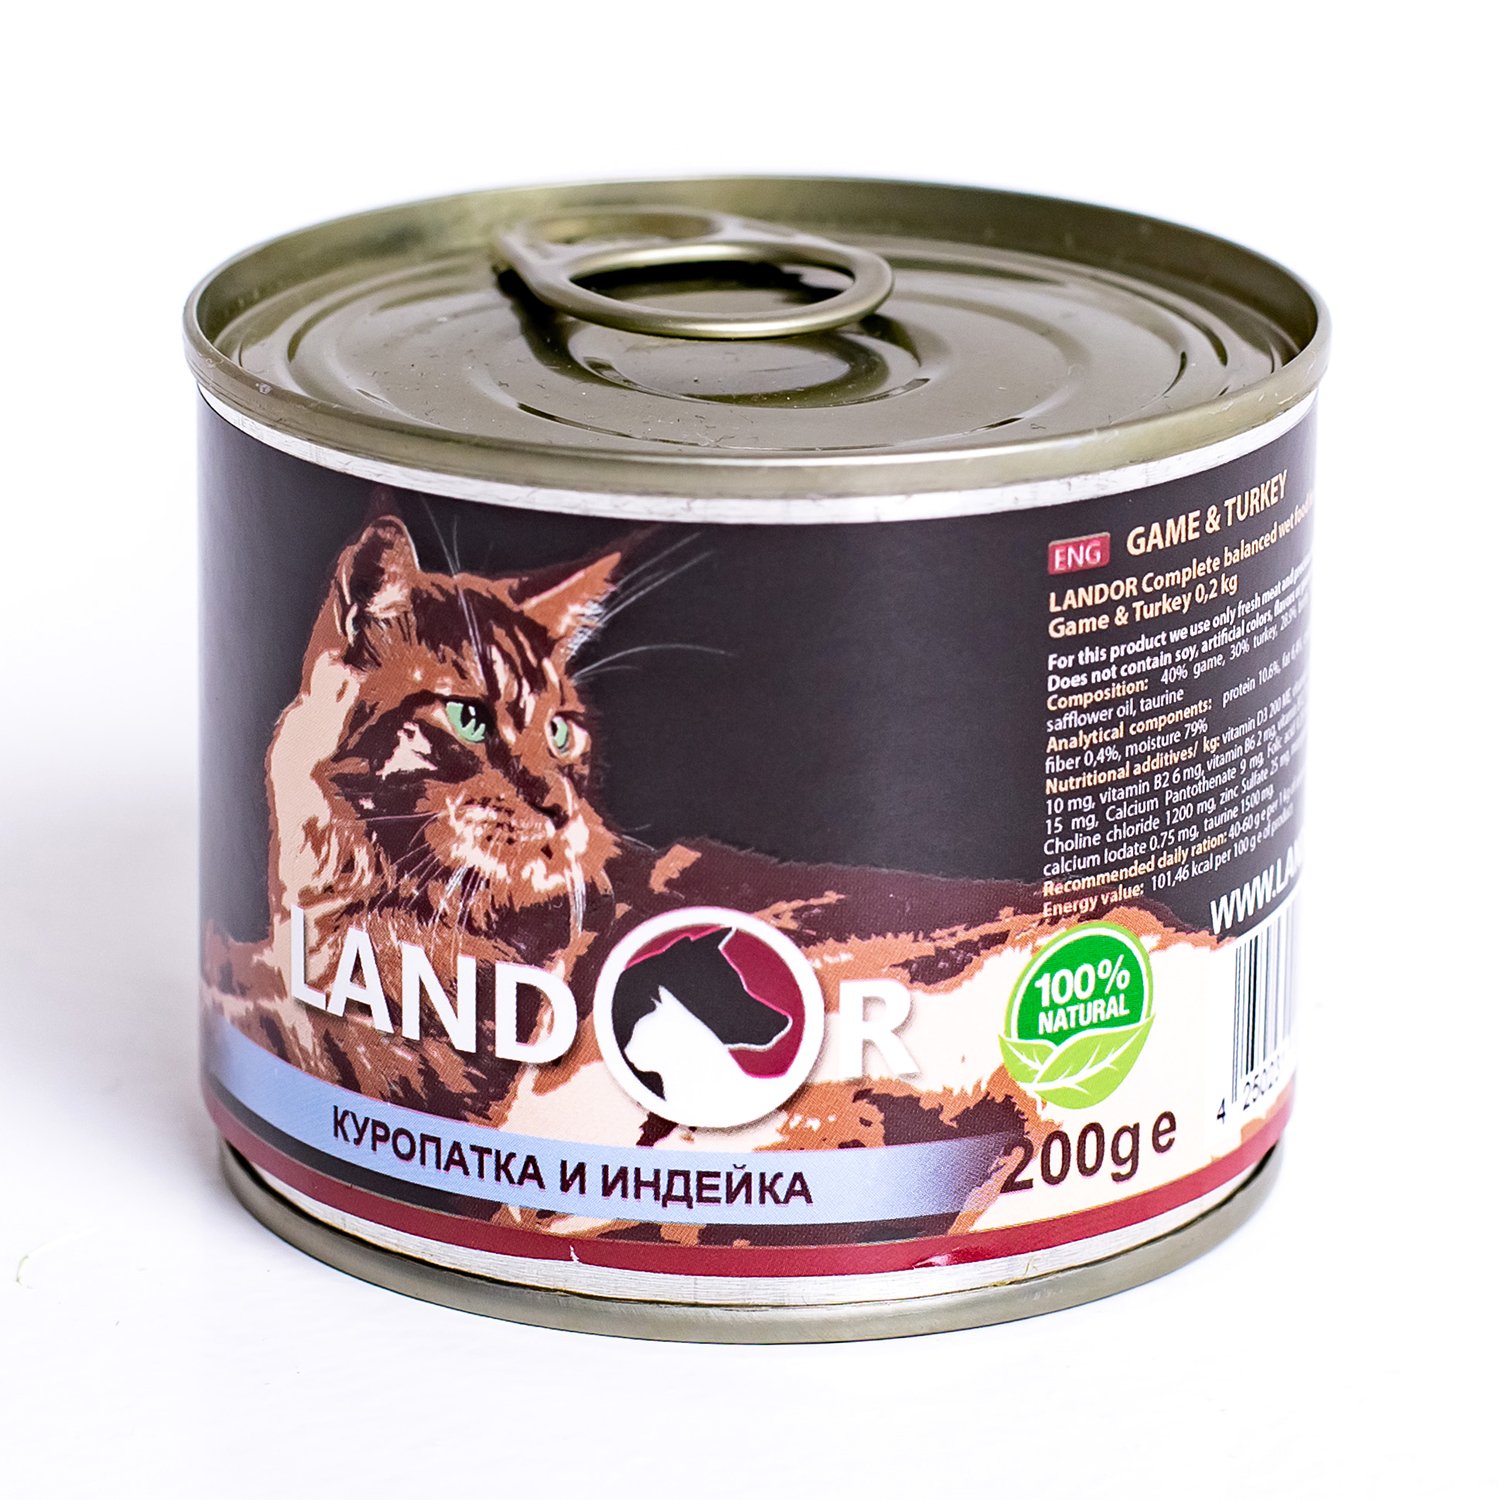 Landor корм для собак. Landor консервы для кошек. Влажный корм Landor. Влажный корм Landor для собак. Landor консервы для собак.